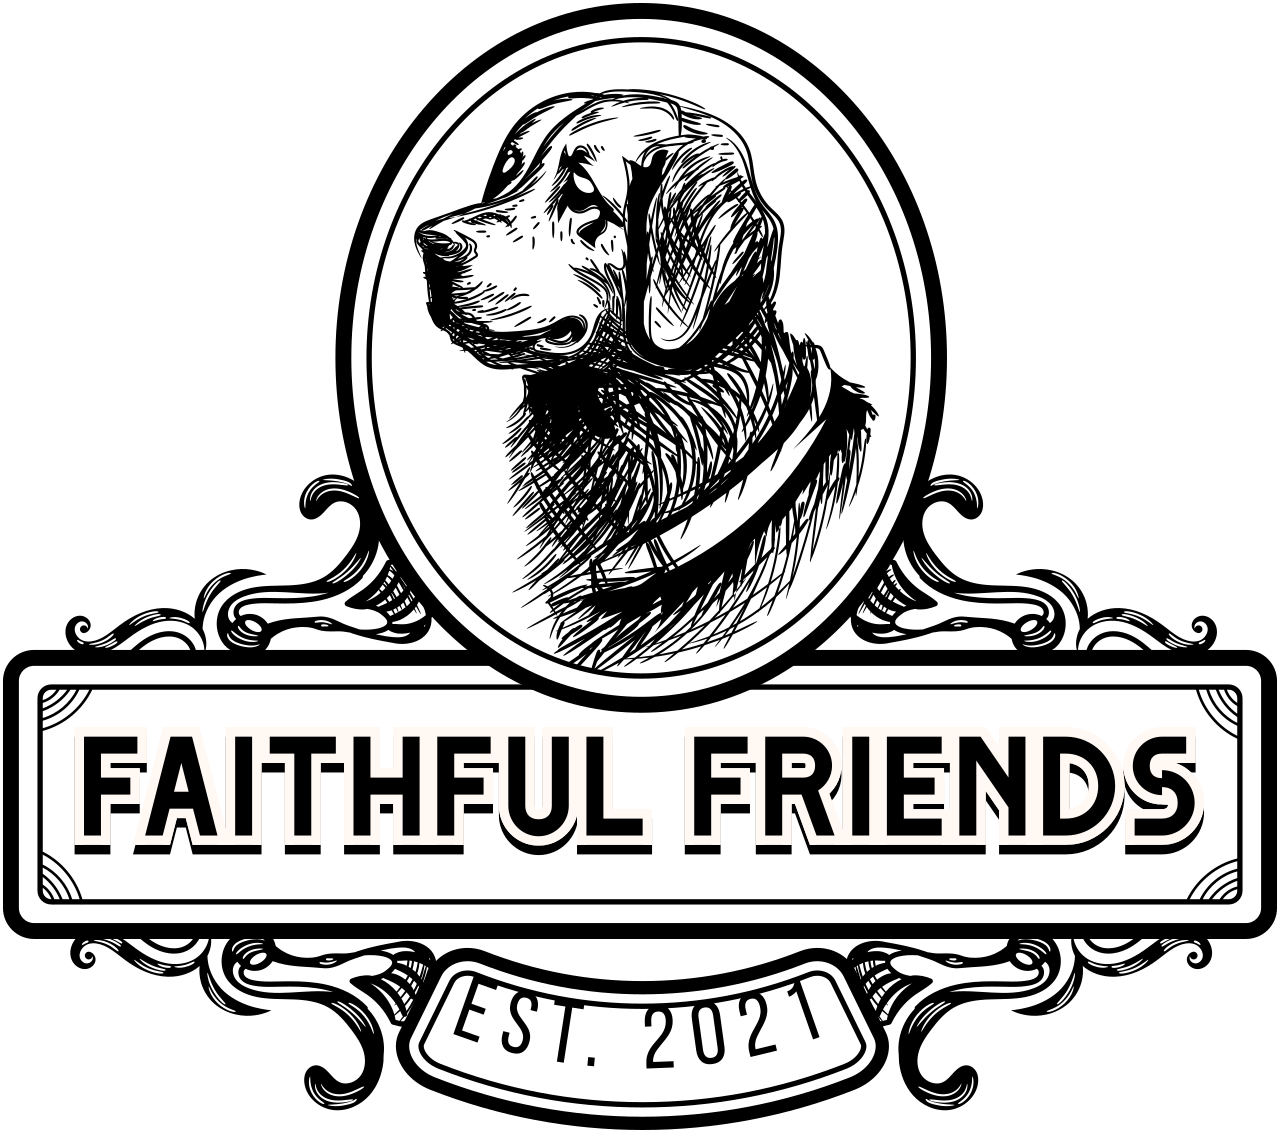 Faithful Friends's logo